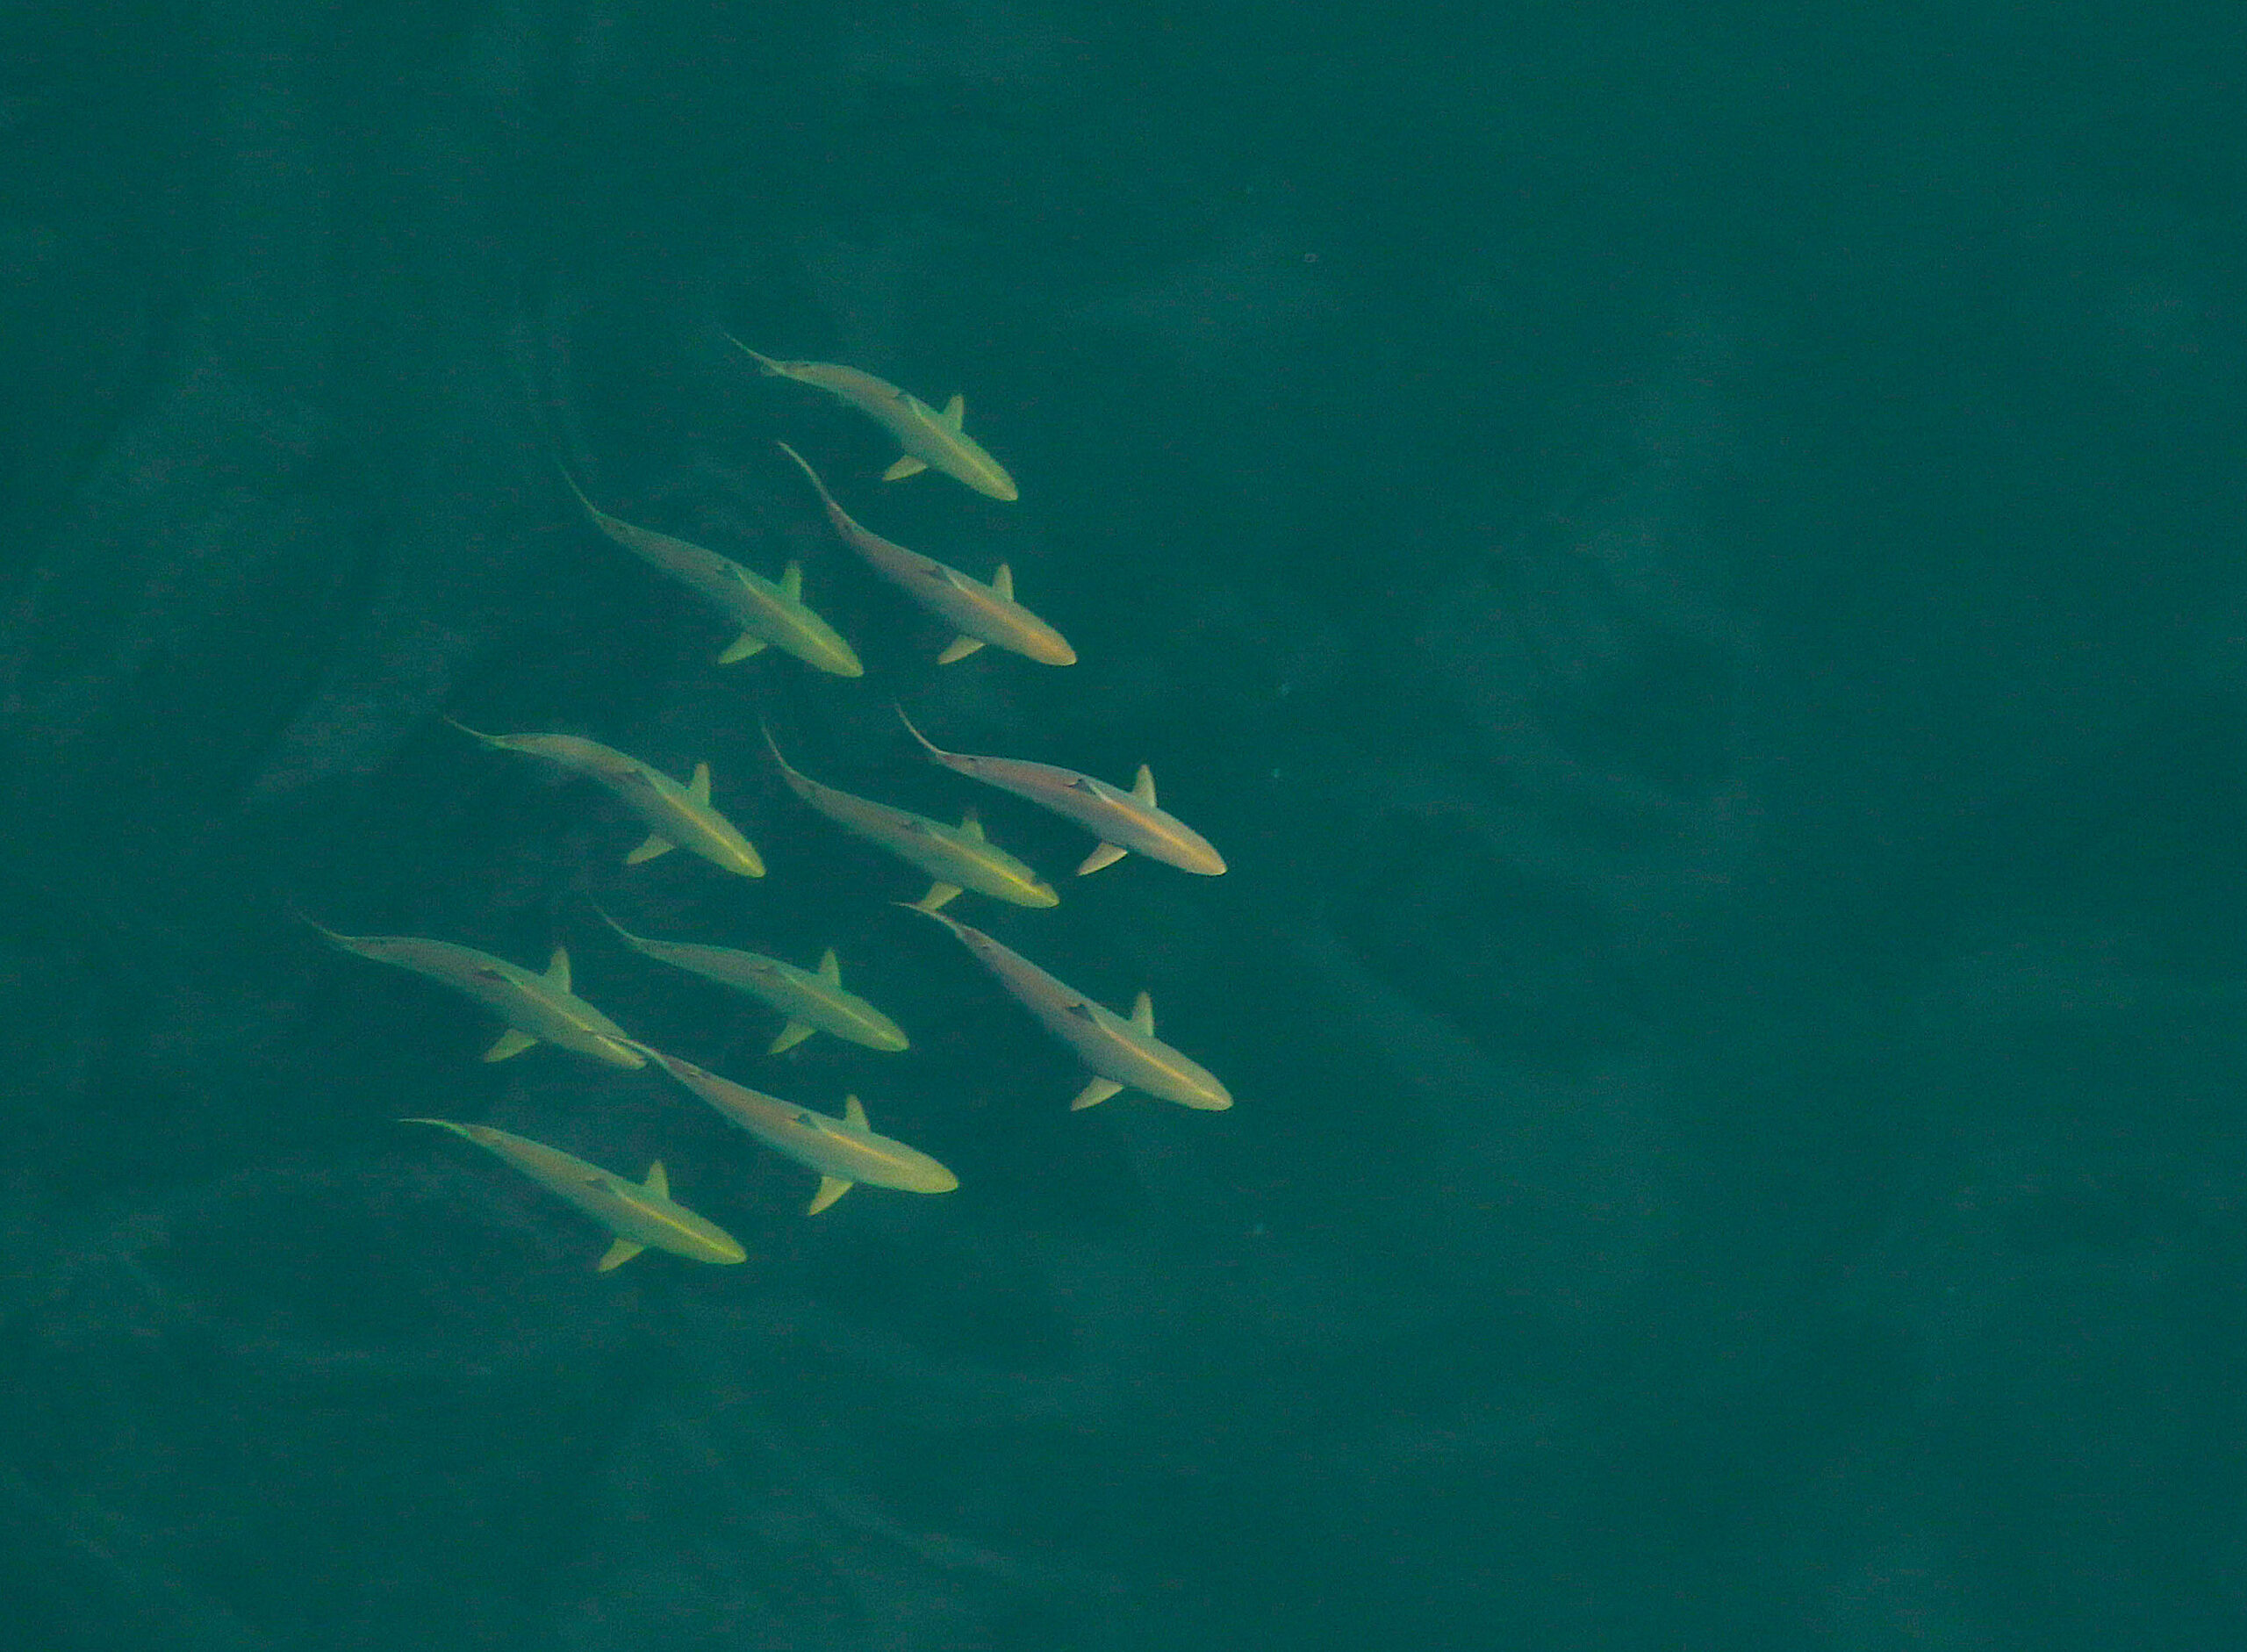 image: spinner sharks.